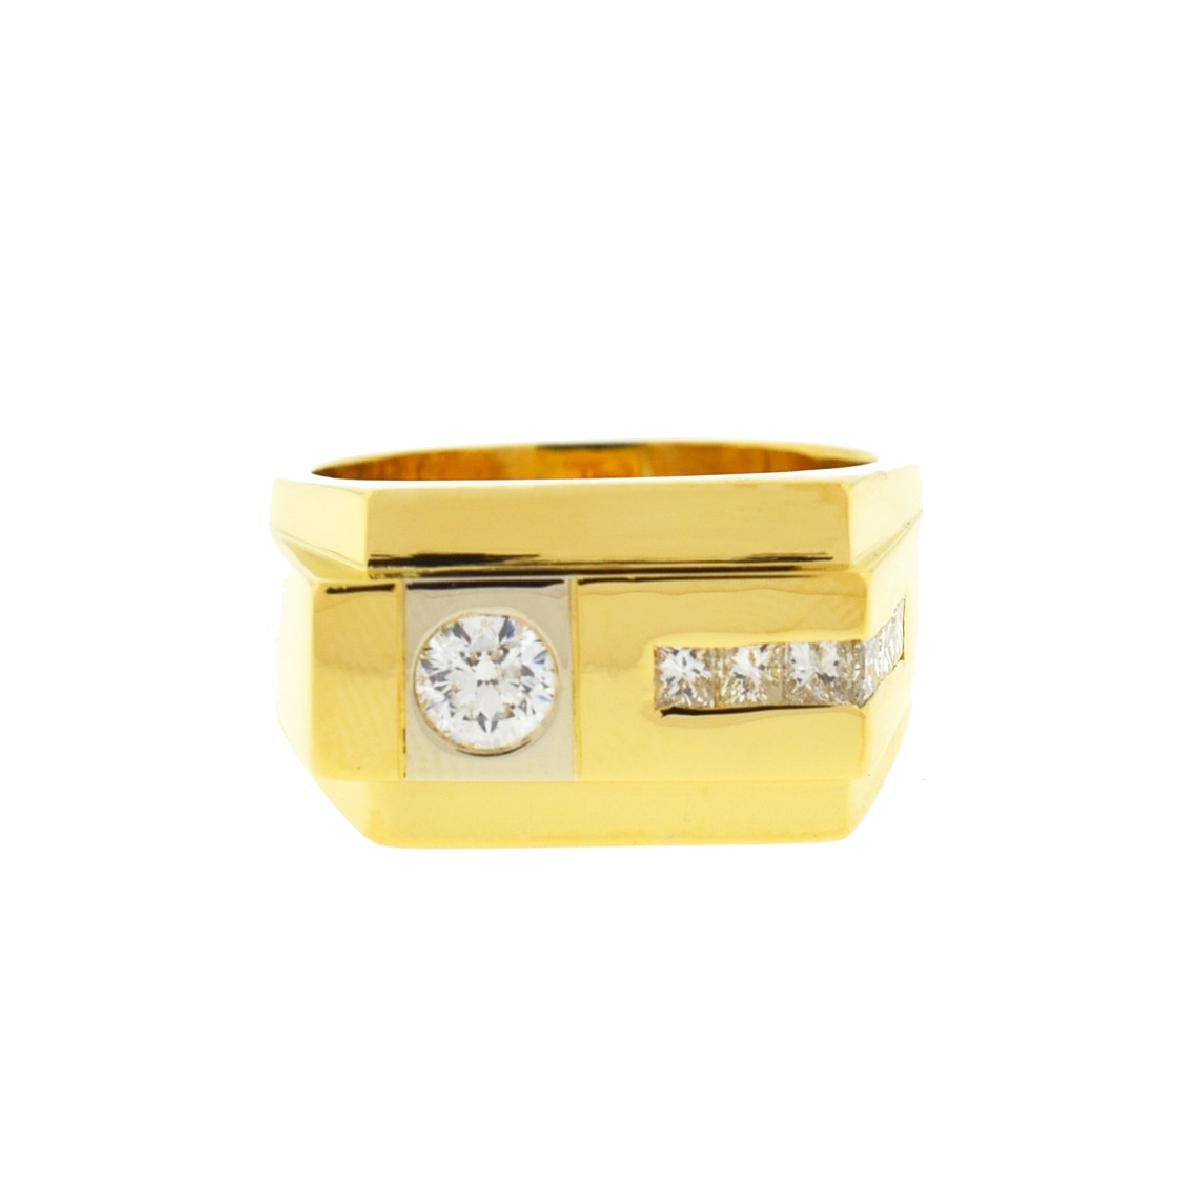 18 Karat Yellow Gold Men's Diamond Band Ring .80 Carat